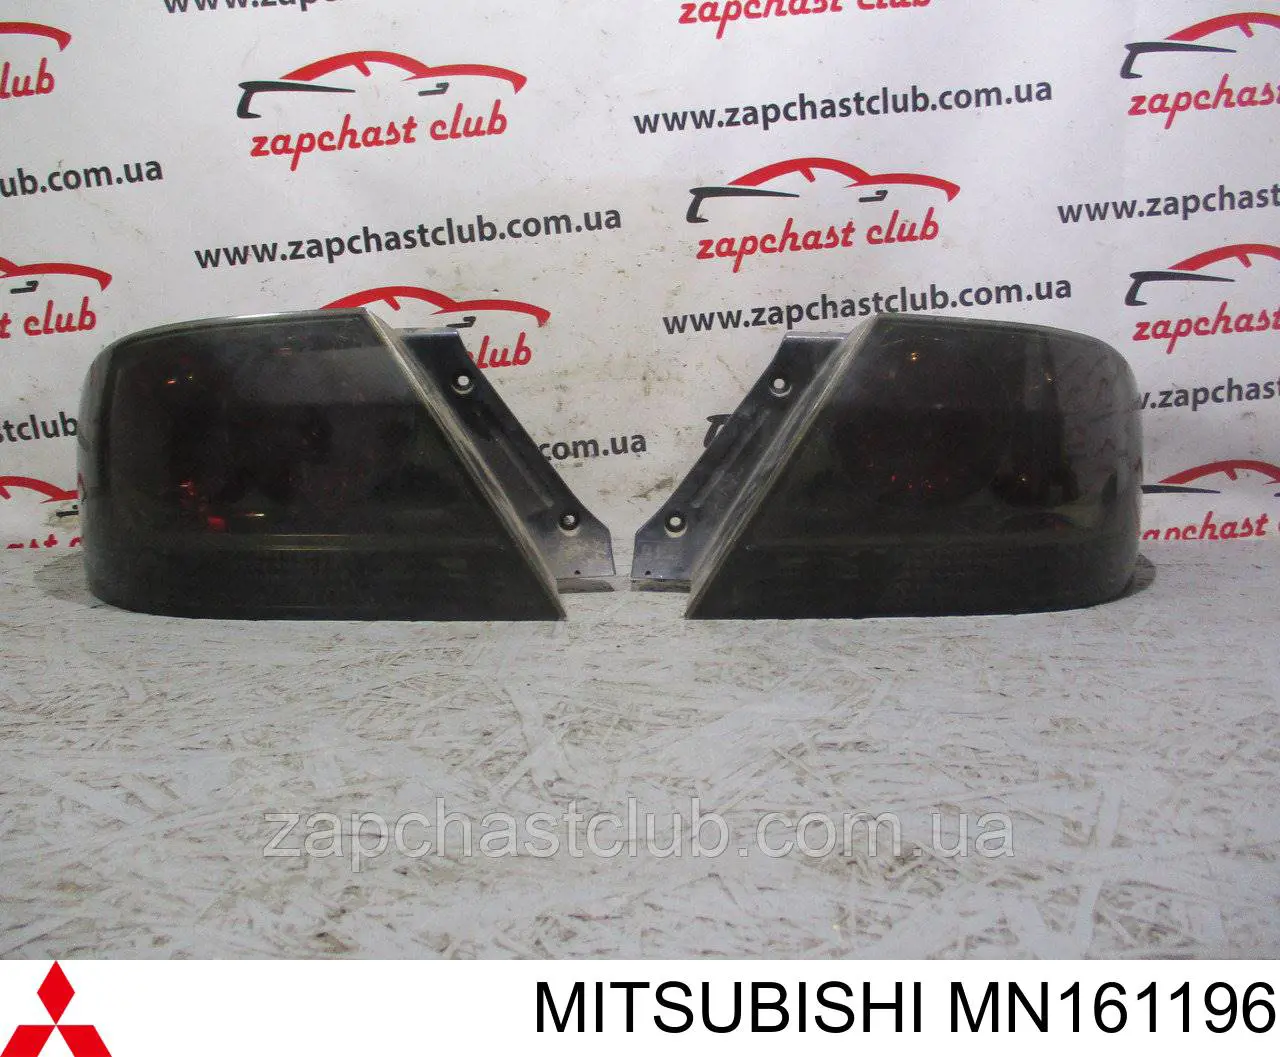 MN161196 Mitsubishi ліхтар задній правий